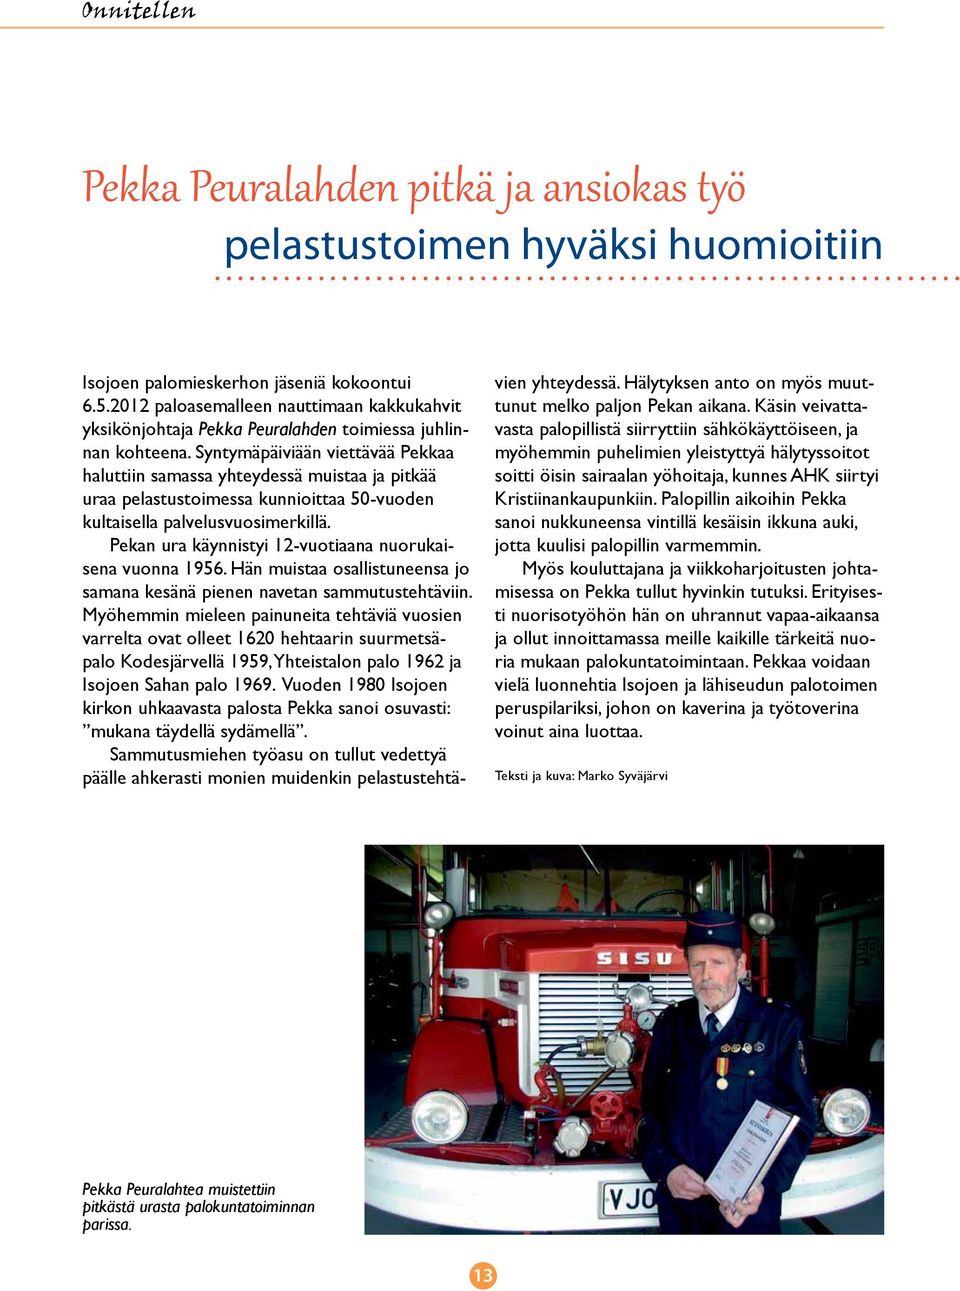 Syntymäpäiviään viettävää Pekkaa haluttiin samassa yhteydessä muistaa ja pitkää uraa pelastustoimessa kunnioittaa 50-vuoden kultaisella palvelusvuosimerkillä.